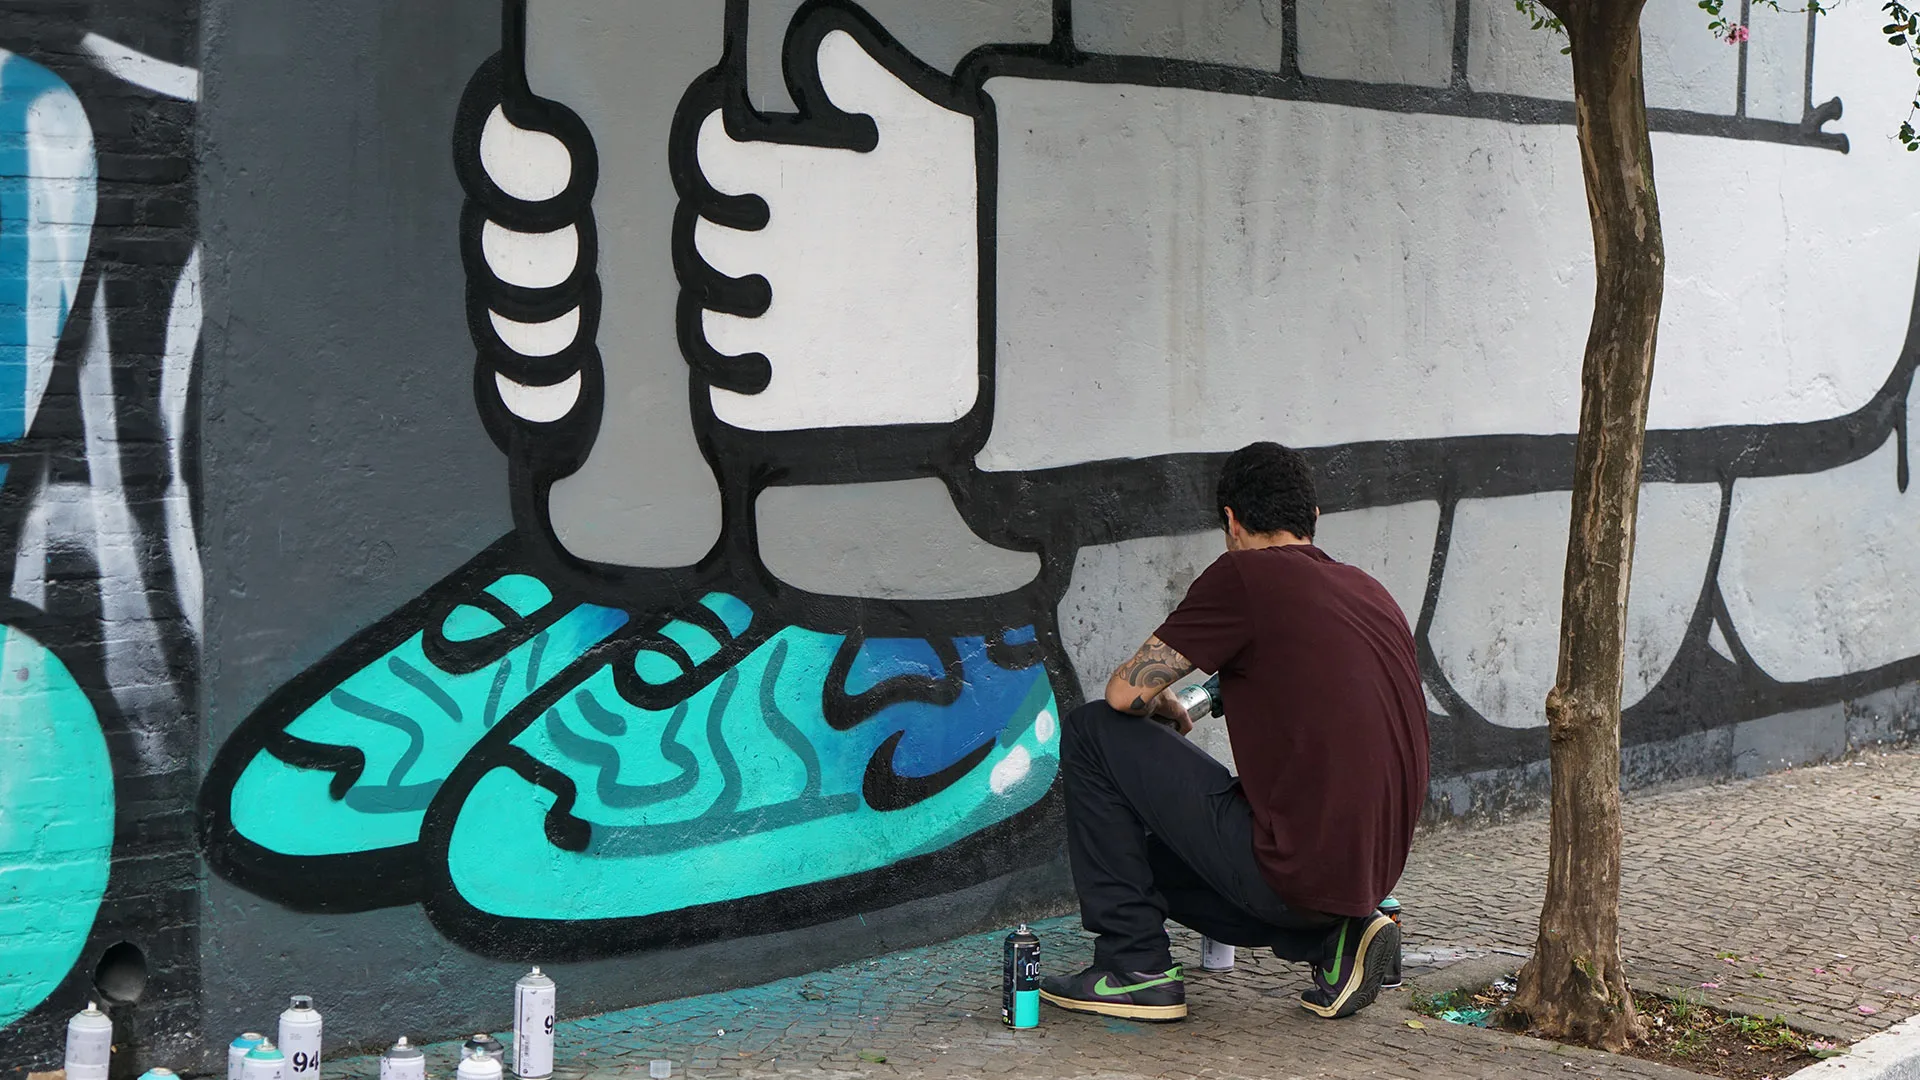 Download Artist Creates Unique Nike-themed Graffiti Mural